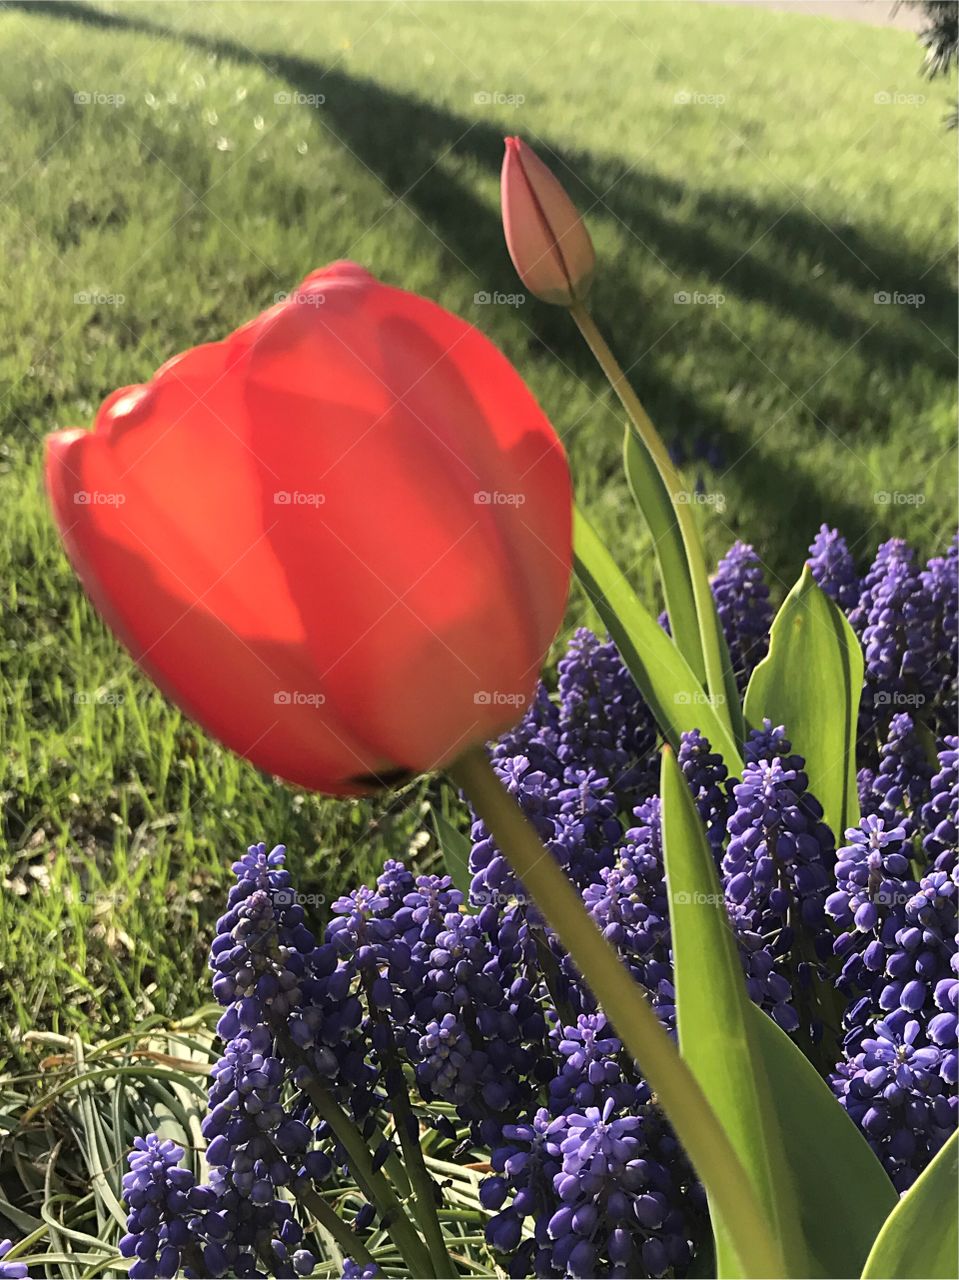 Red tulip close-up